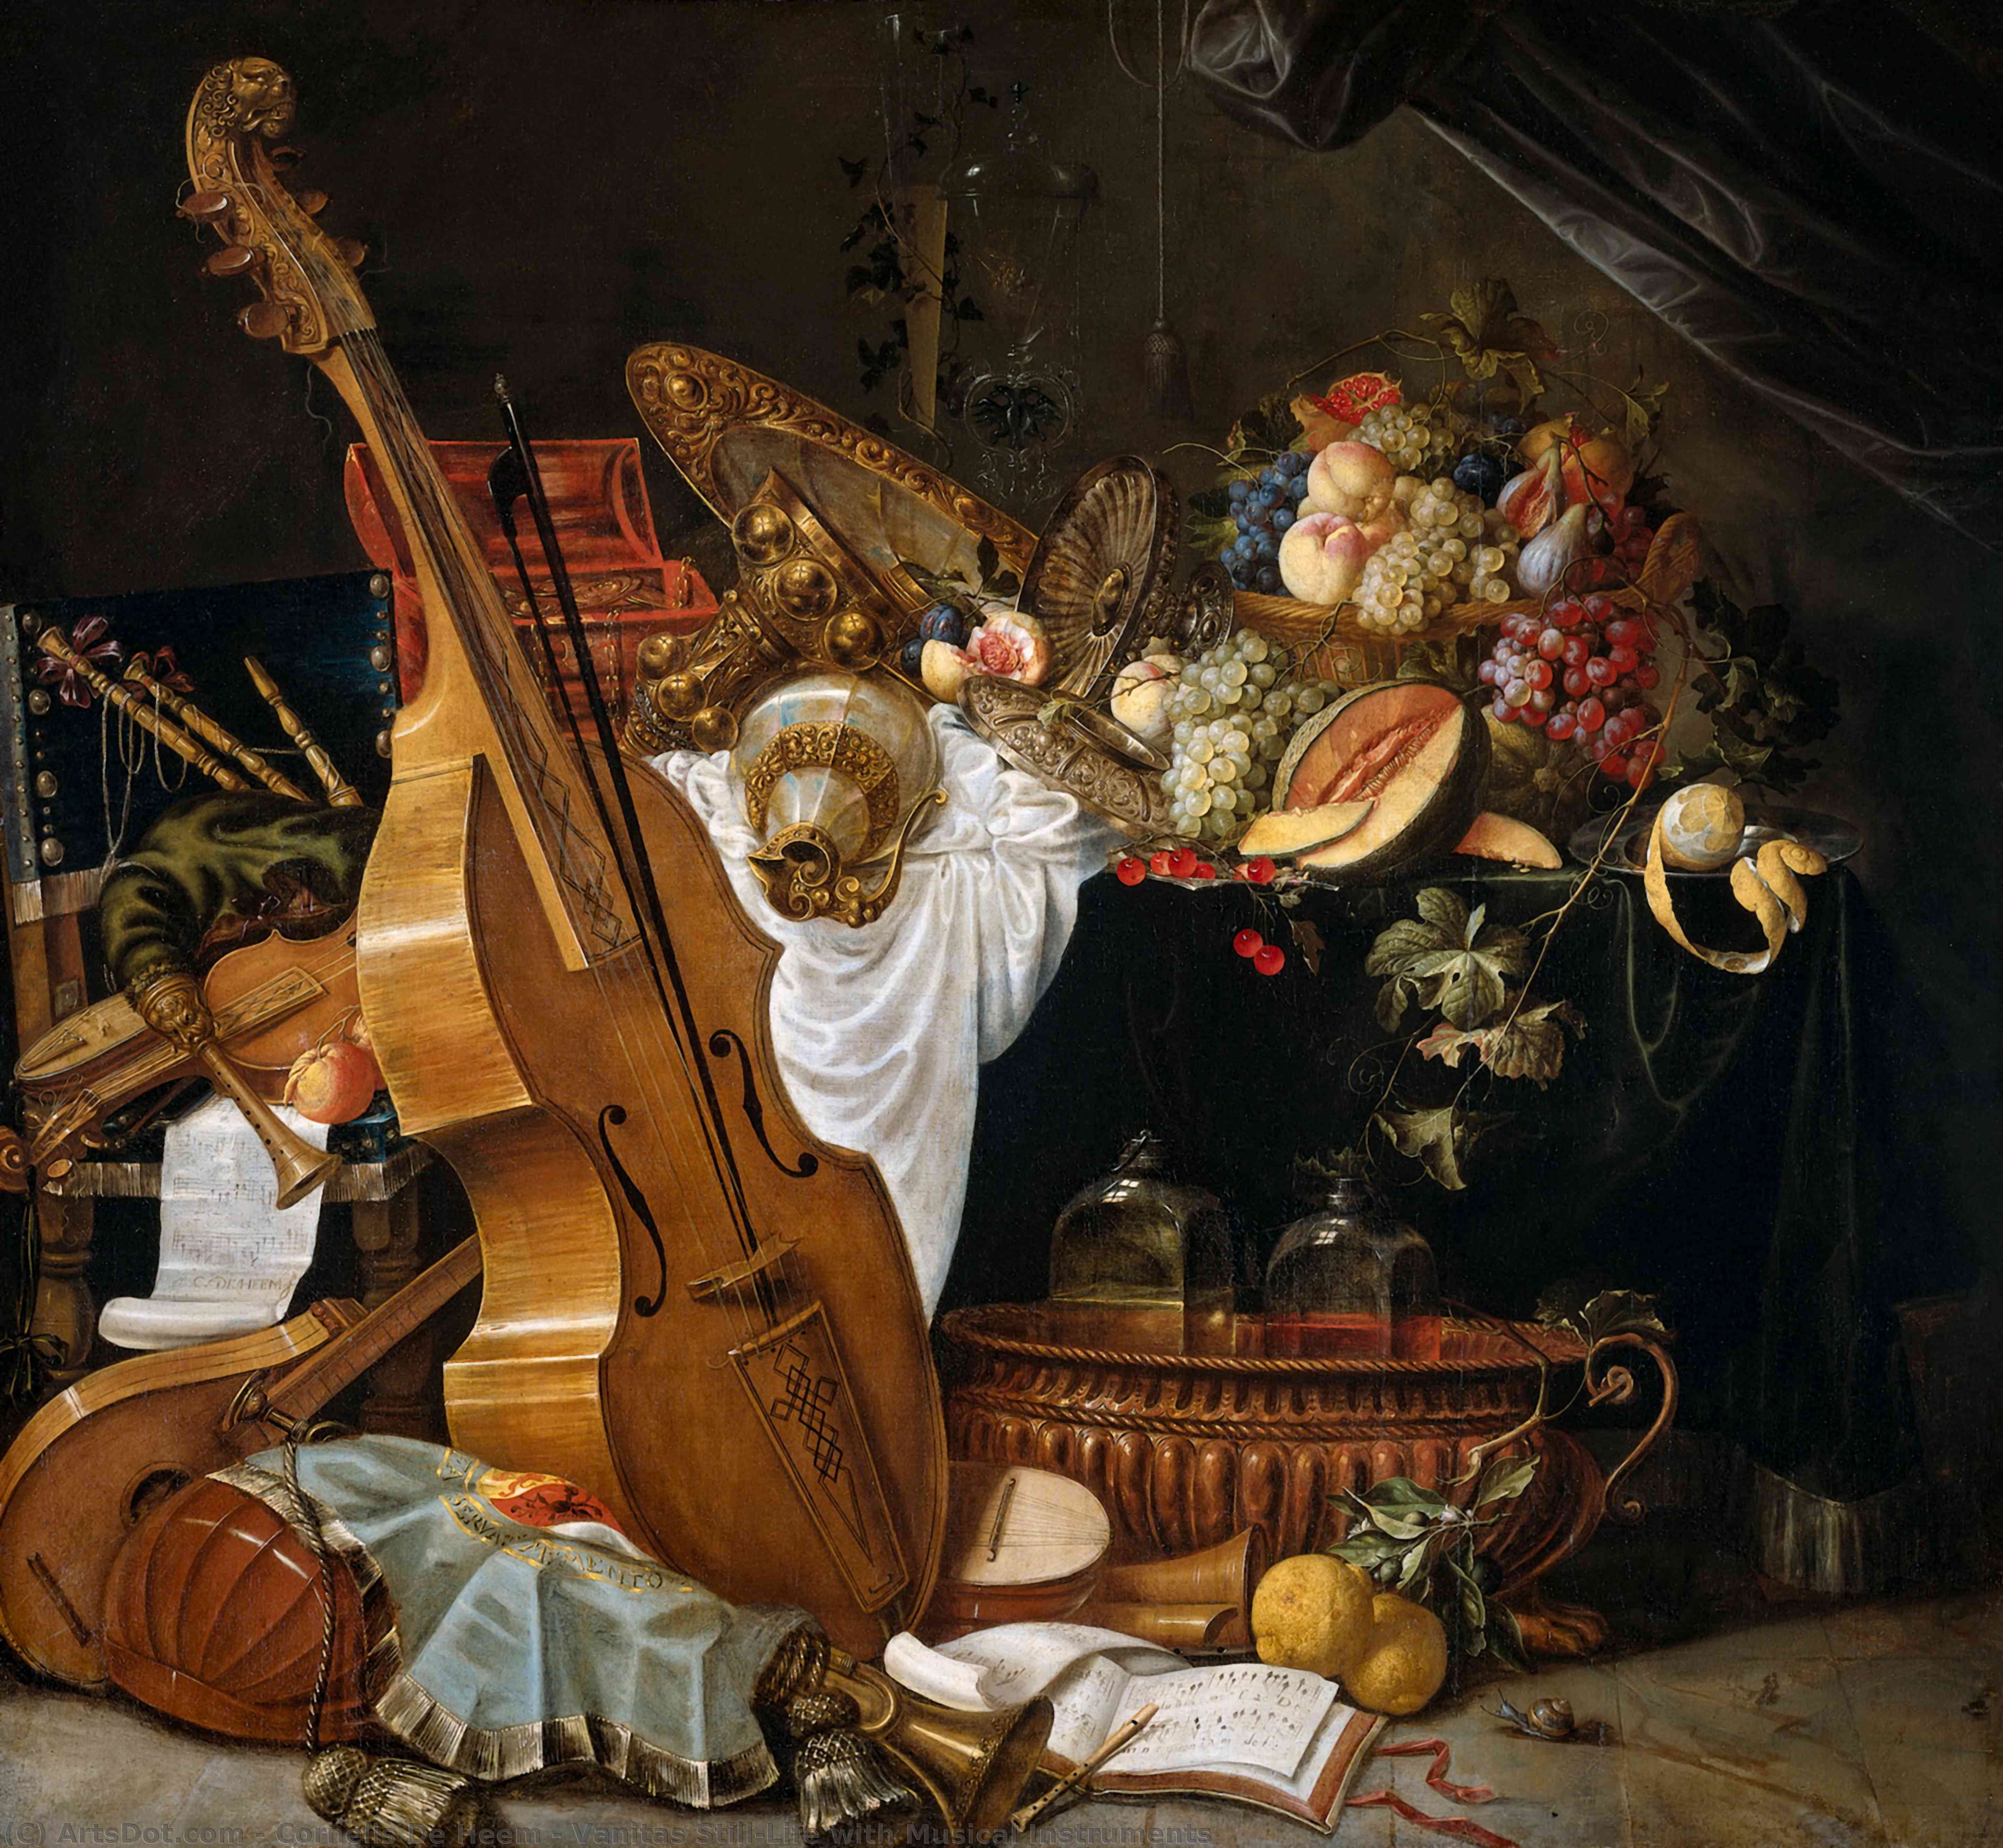 Achat Reproductions De Peintures Vanitas Still-Life with Musical Instruments de Cornelis De Heem (1631-1695, Netherlands) | ArtsDot.com